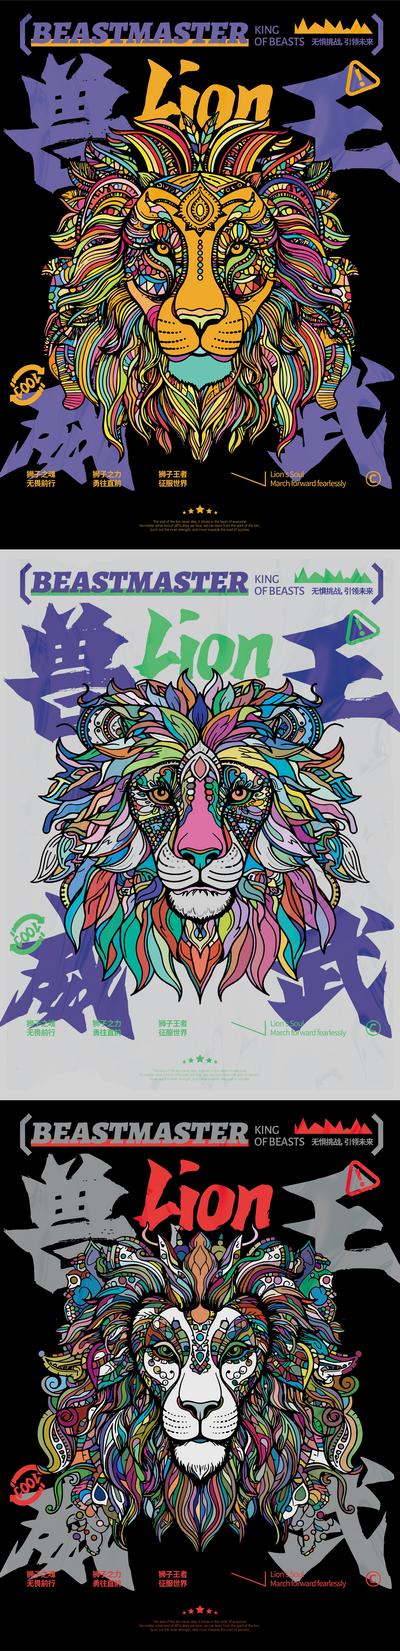 南门网 广告 海报 插画 潮流 创意 印第安 彩色 色块 挑战 无畏 威武 兽王 狮子头 狮子 动物 野兽 招贴